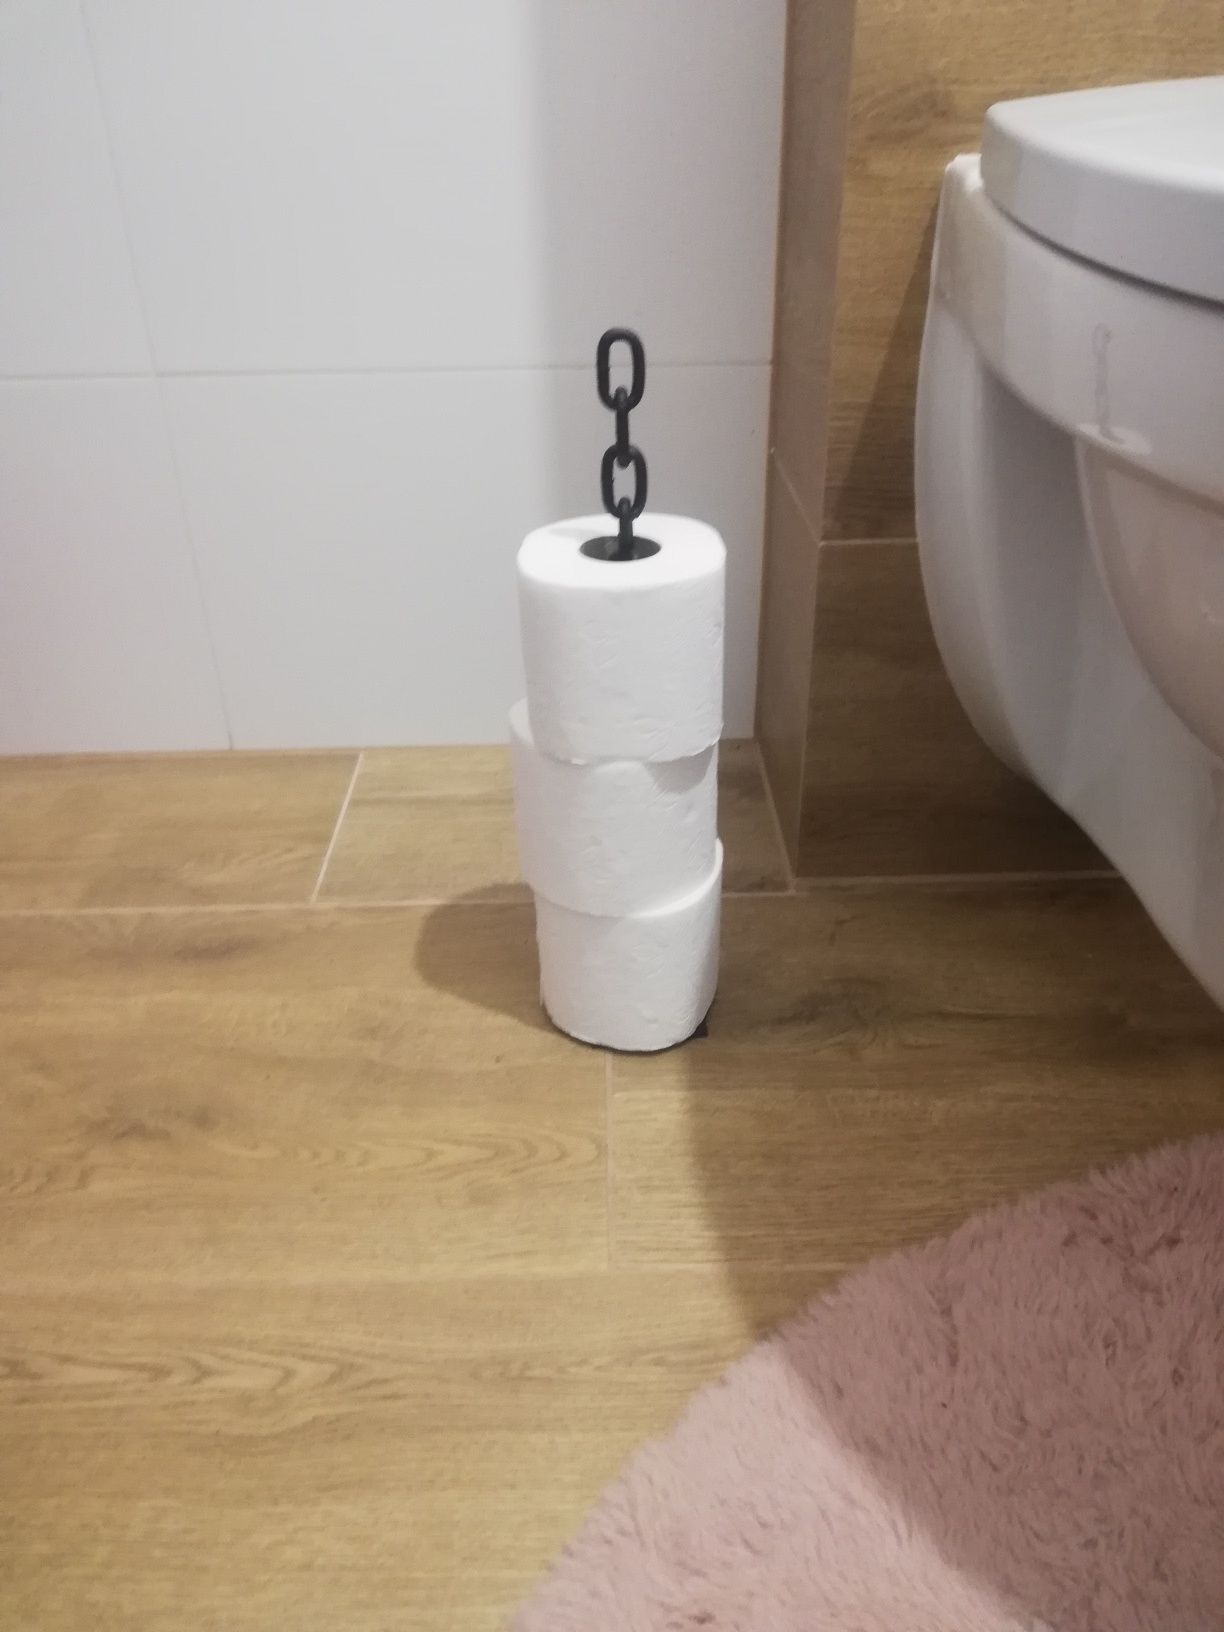 Stojak na ręcznik papierowy/papier toaletowy